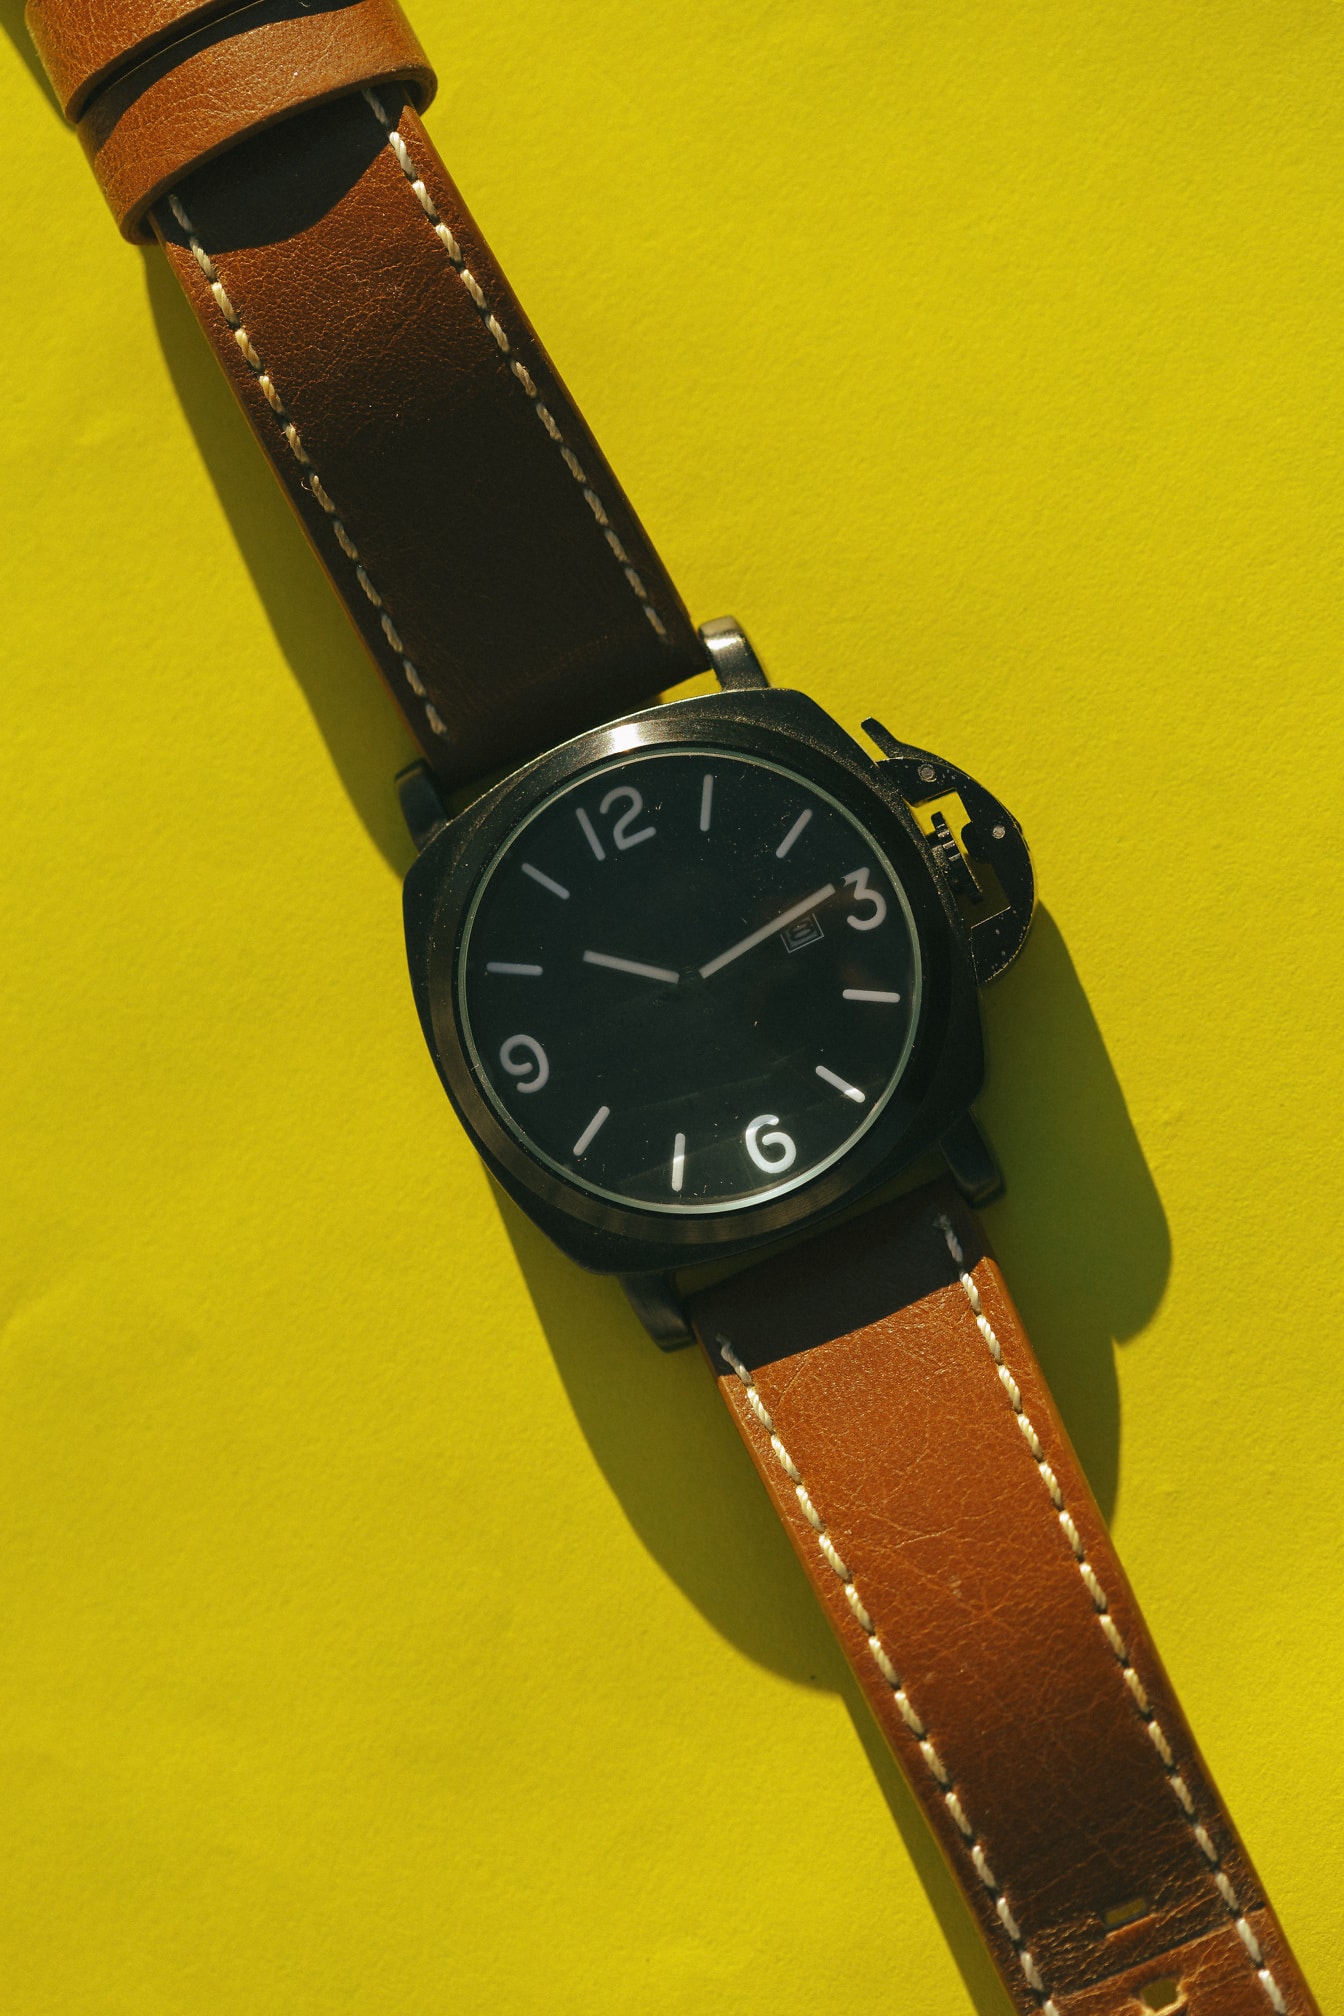 Relógio de pulso à moda antiga com cinto de couro marrom no fundo amarelo close-up